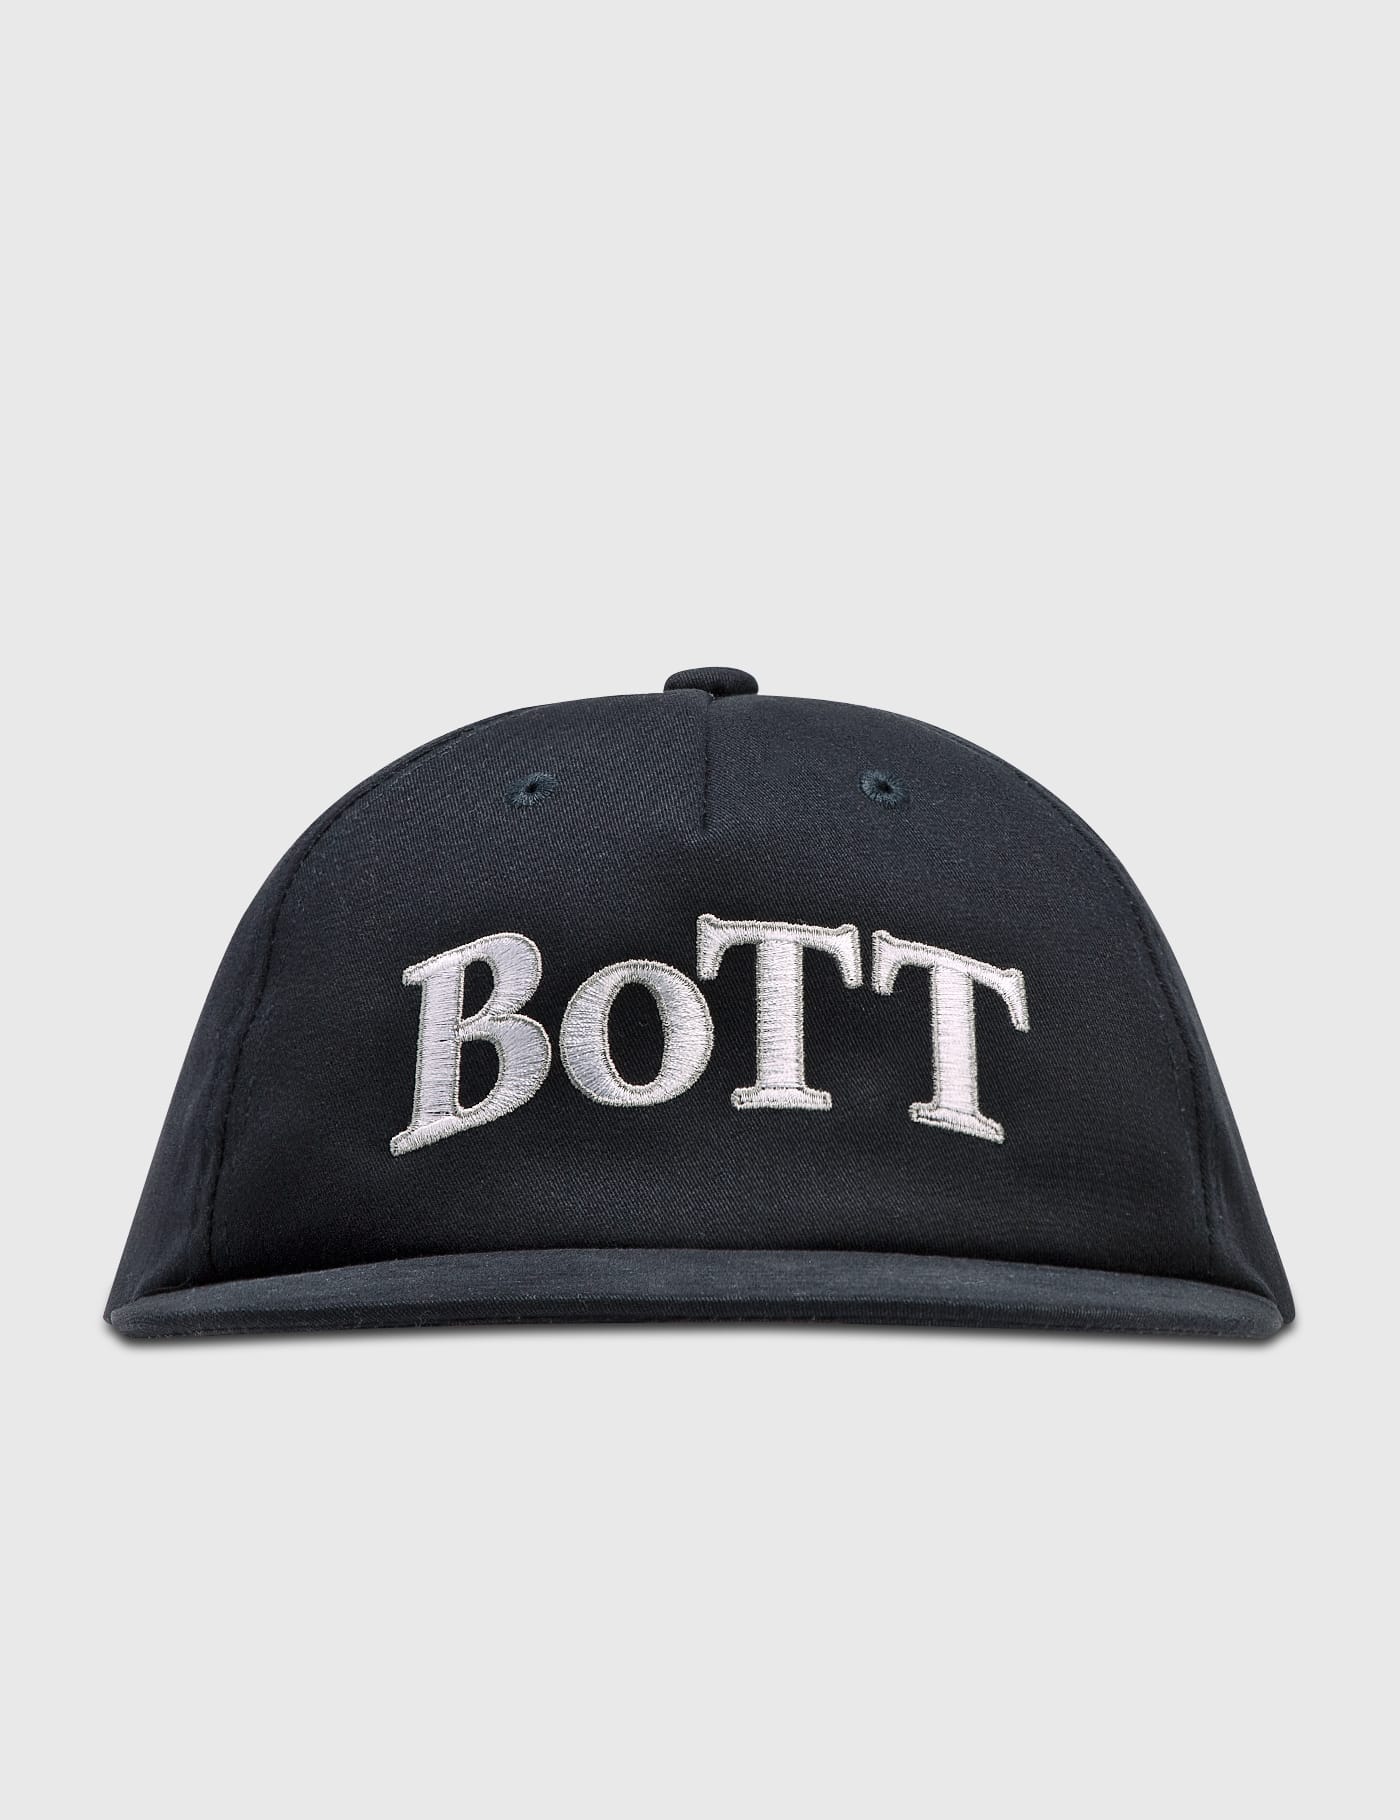 BoTT - OG ロゴ 5 パネル キャップ | HBX - ハイプビースト